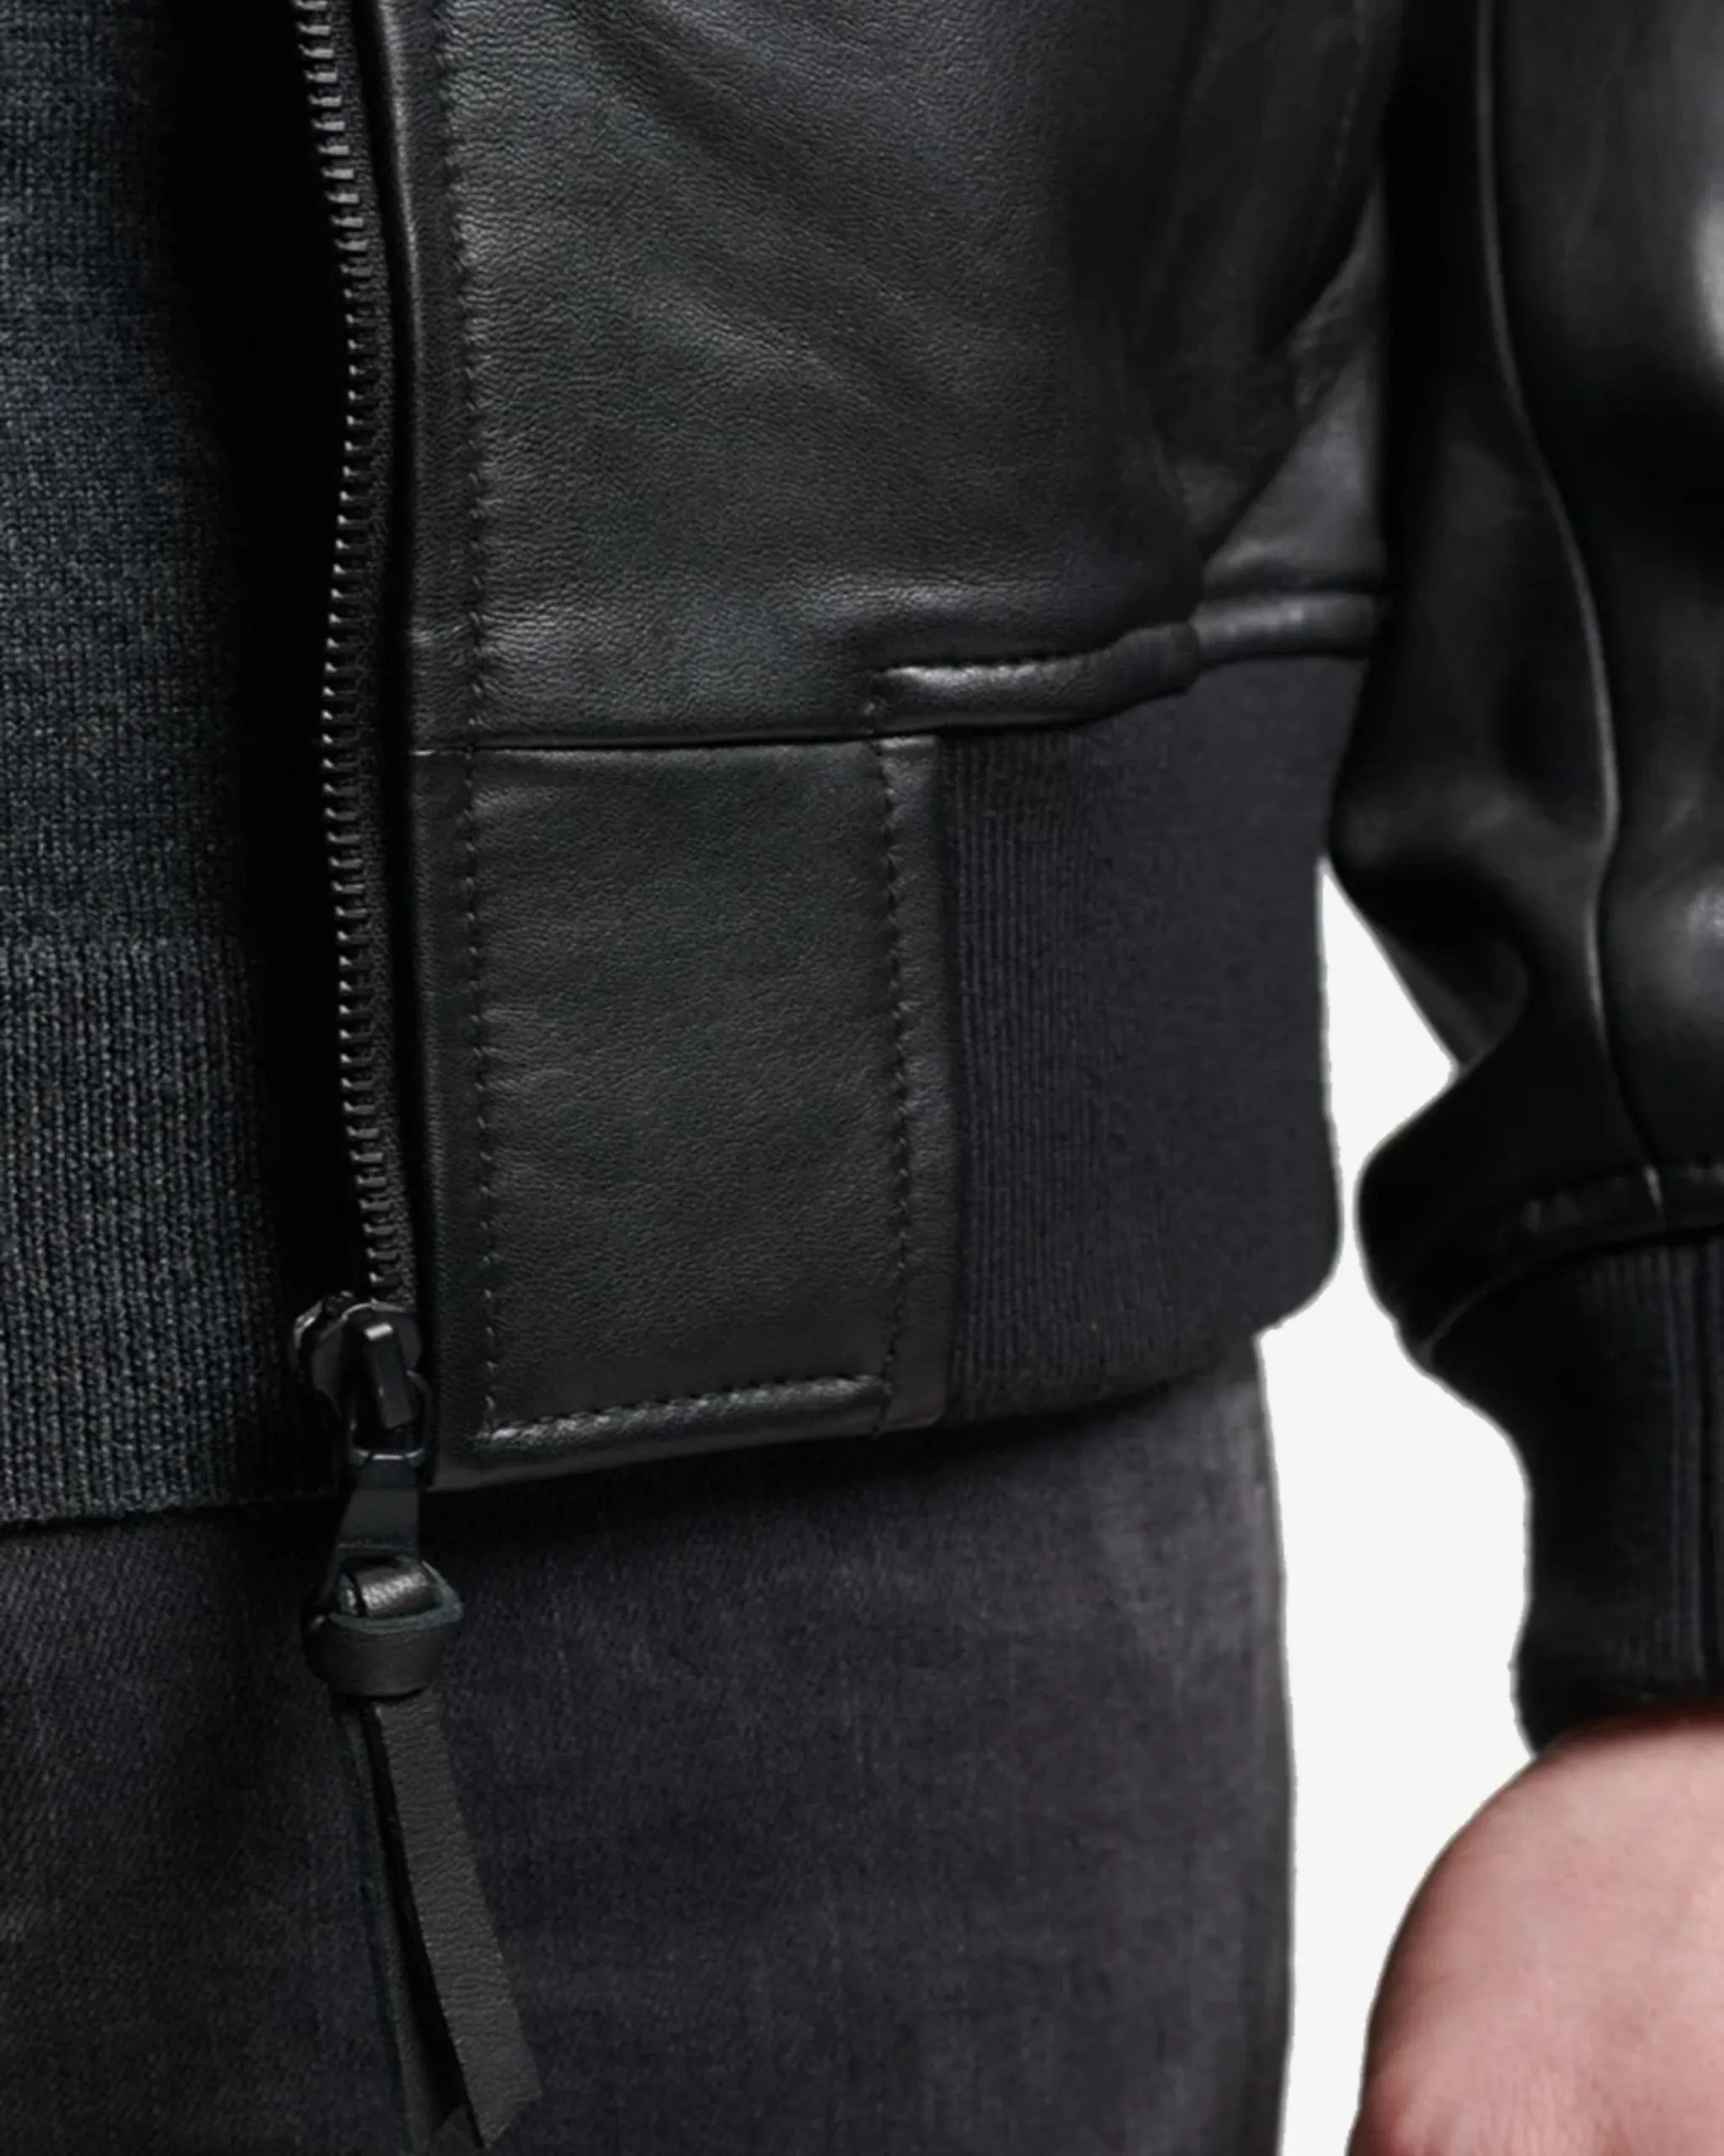 flight-black-bomber-leather-jacket-stylish-and-comfortable (4)